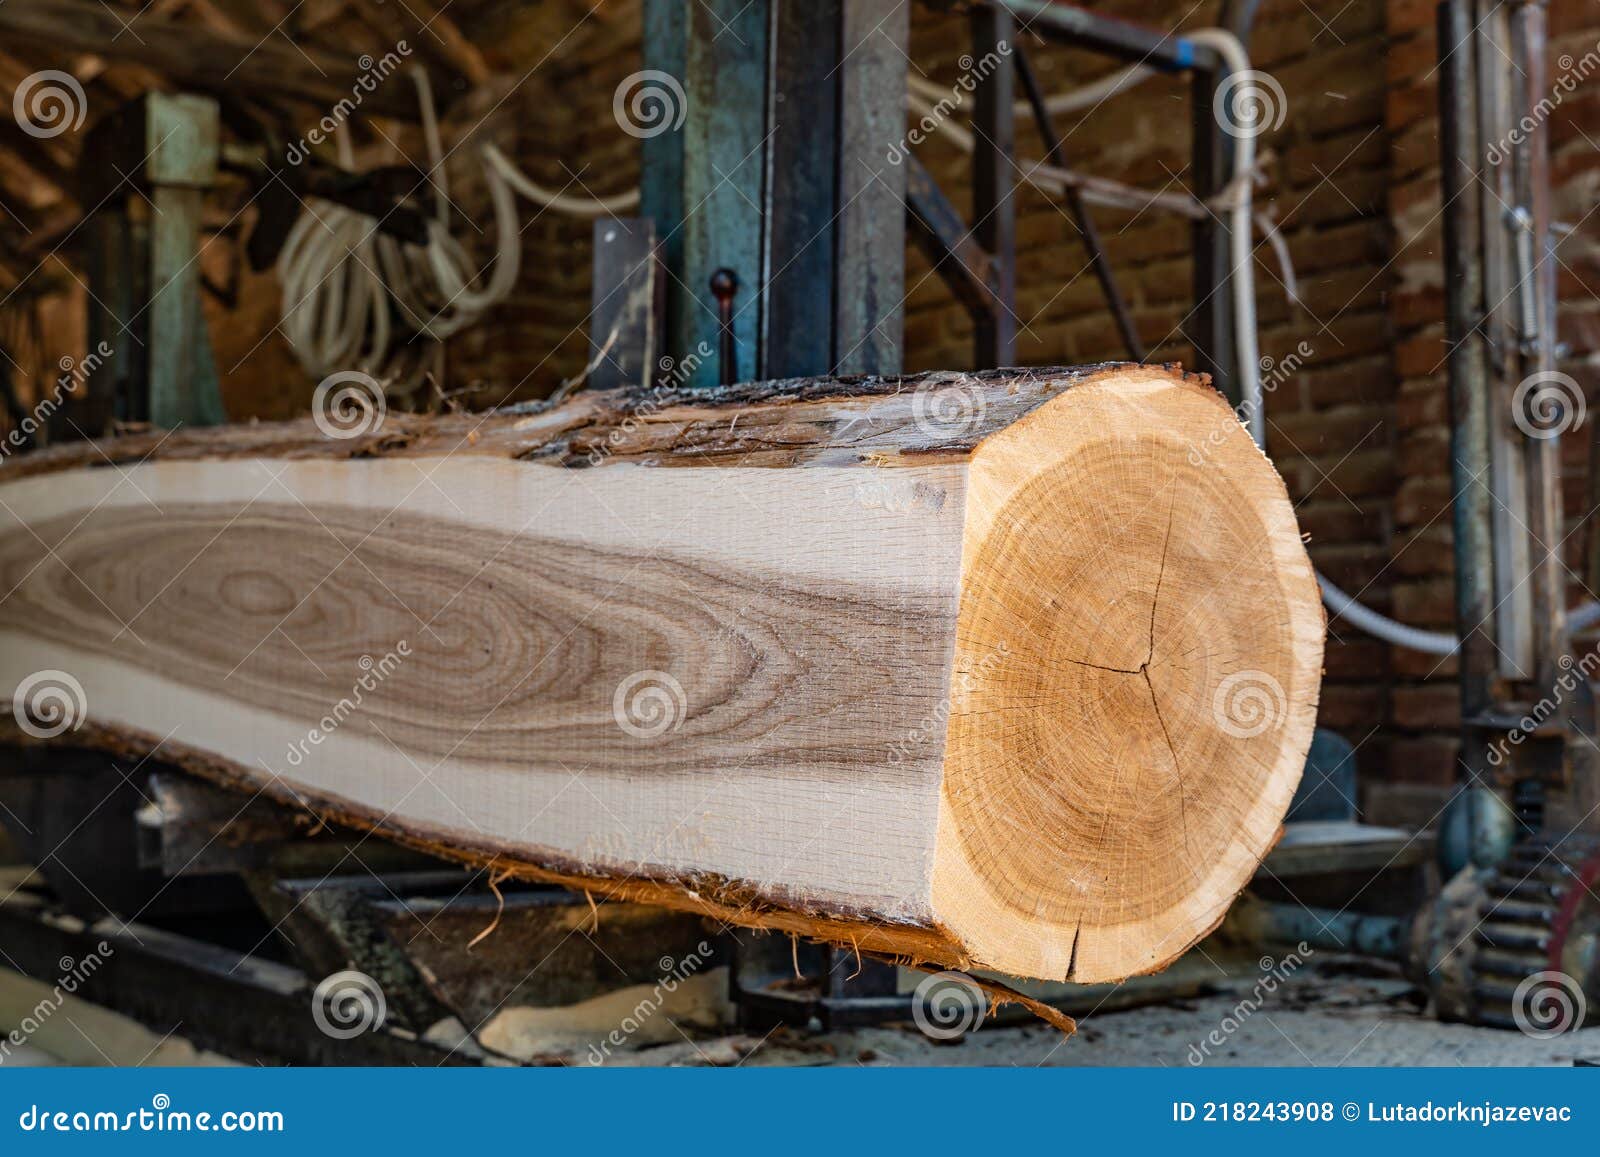 Cutting Model Lumber Nude Pretween Girl